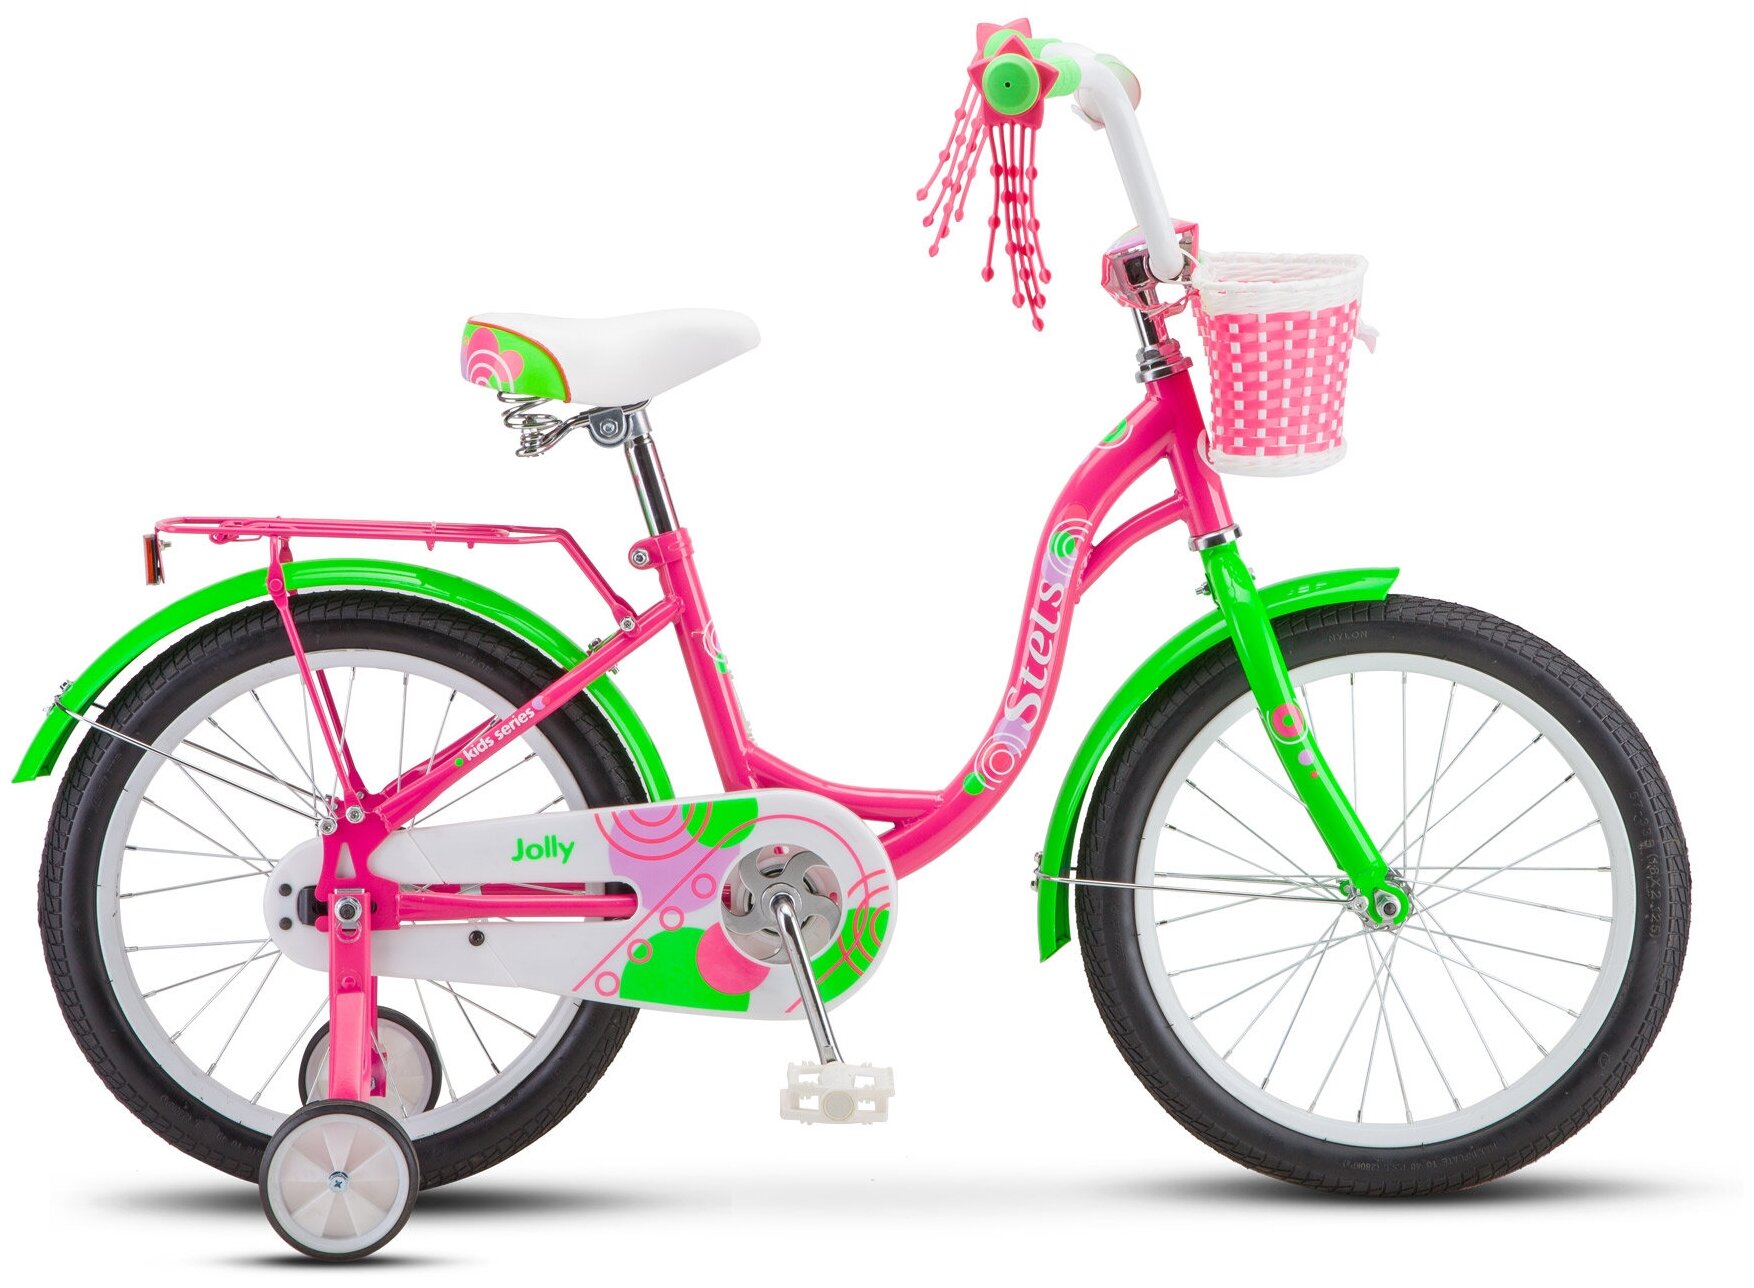 Детский велосипед STELS Jolly 18 V010 (2020) пурпурный/зеленый 11" (требует финальной сборки)